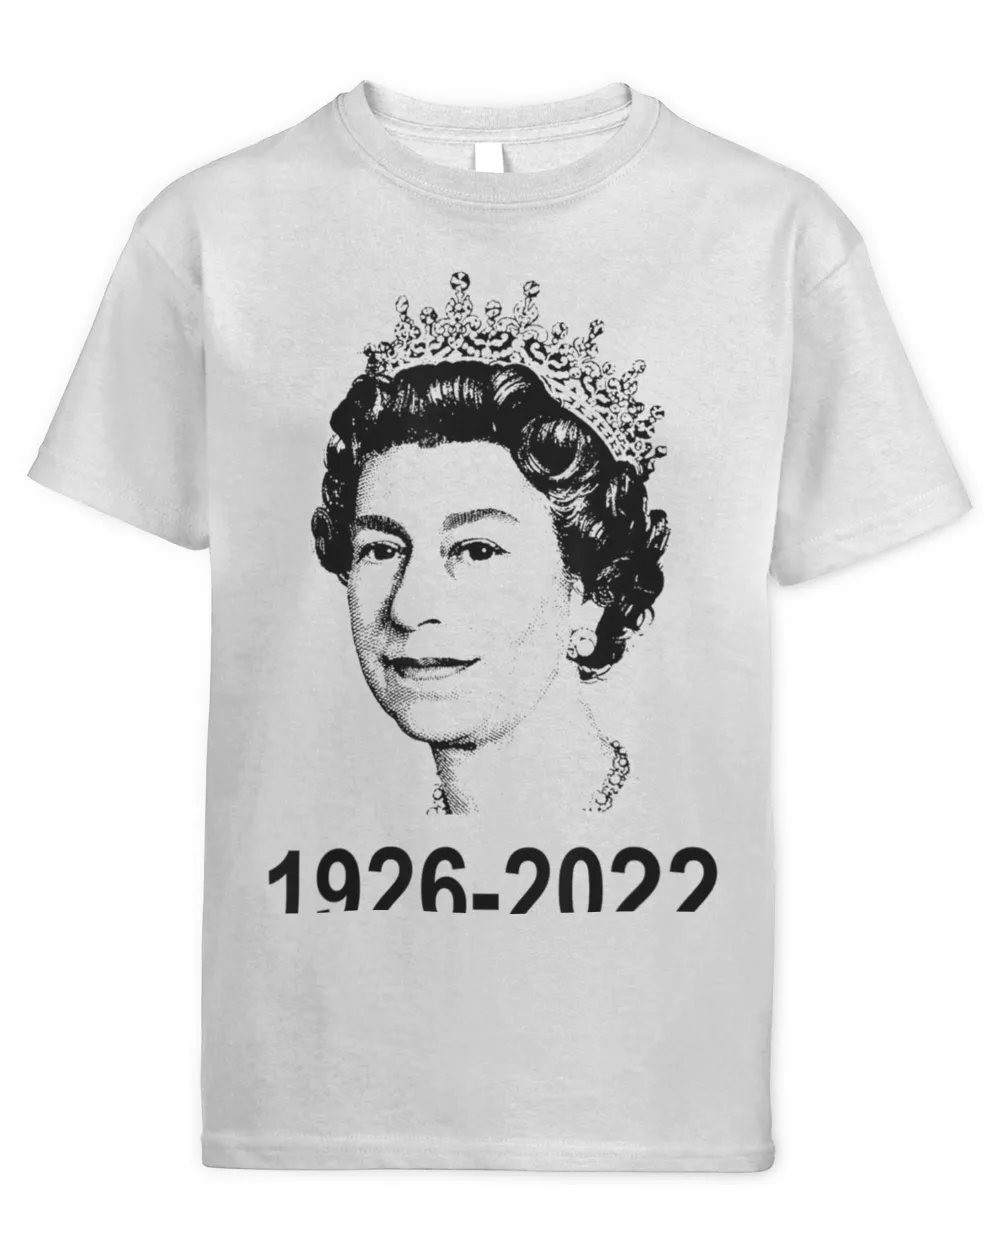 British Queen 96 Years Old 1926-2022 Queen’s Death Shirt